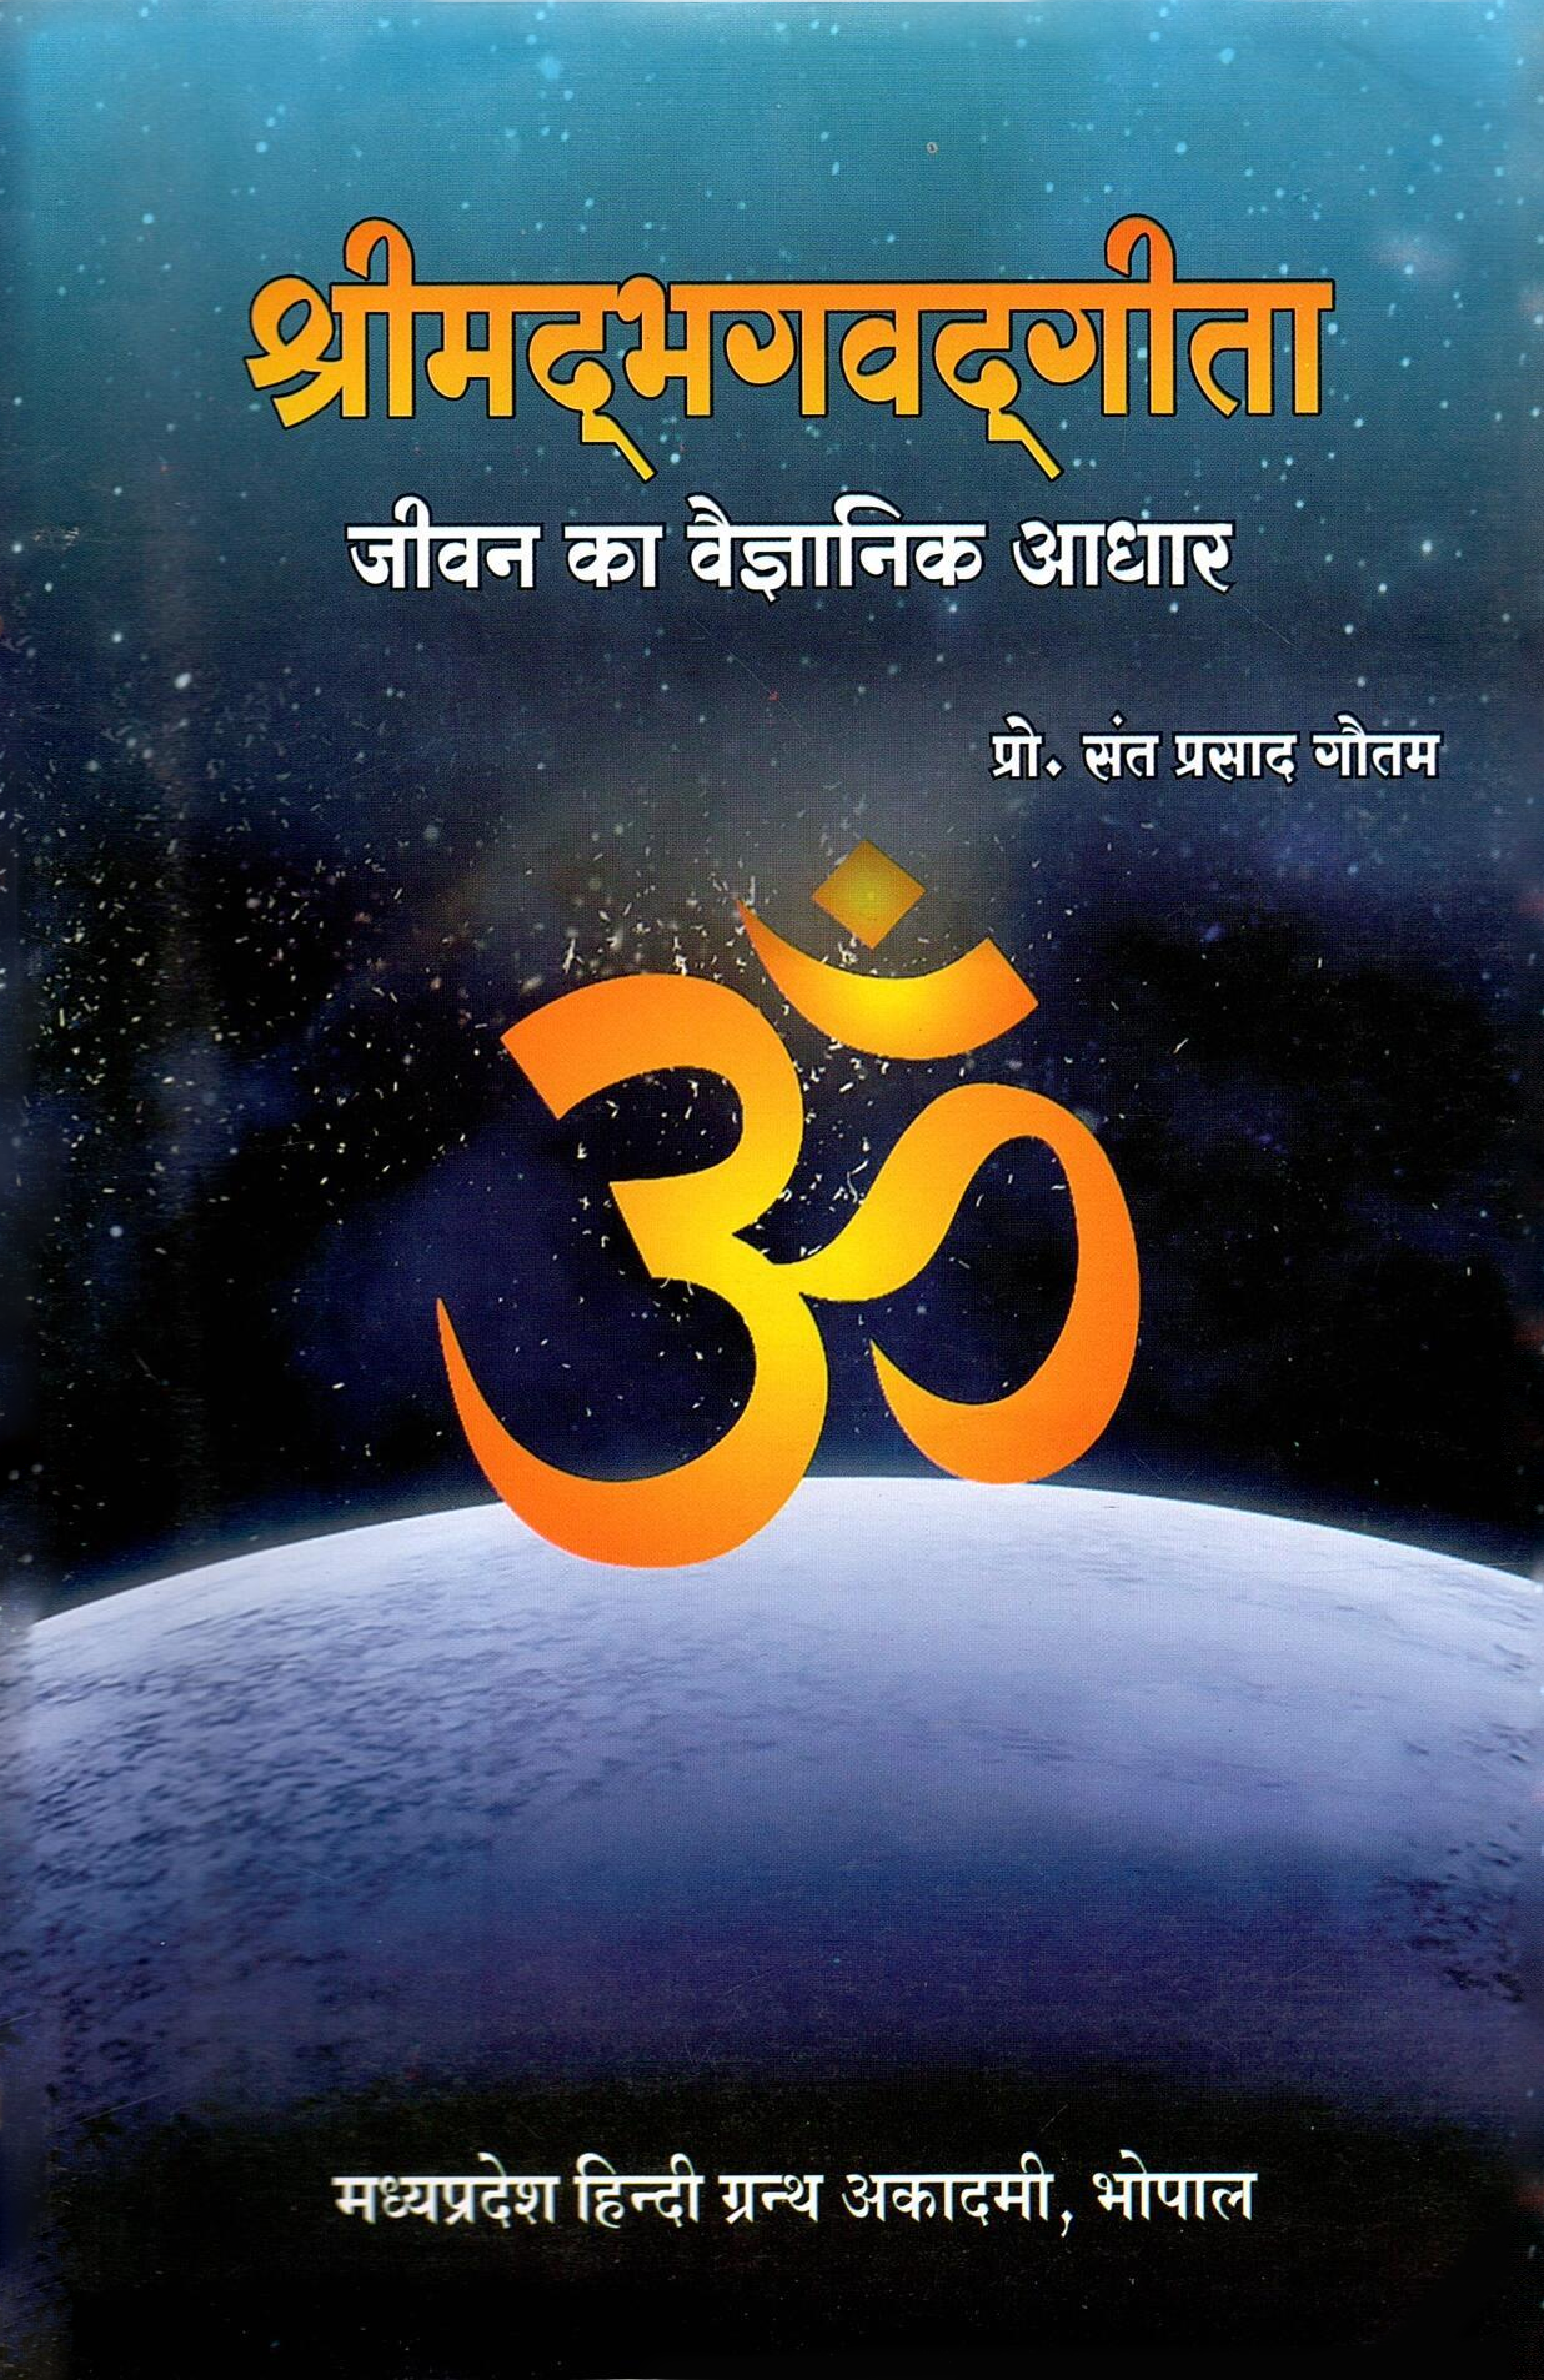 श्रीमदभगवद्धगीता जीवन का वैज्ञानिक आधार | Srimadbhagavadgita Jeevan Ka Vaigyanik Aadhar